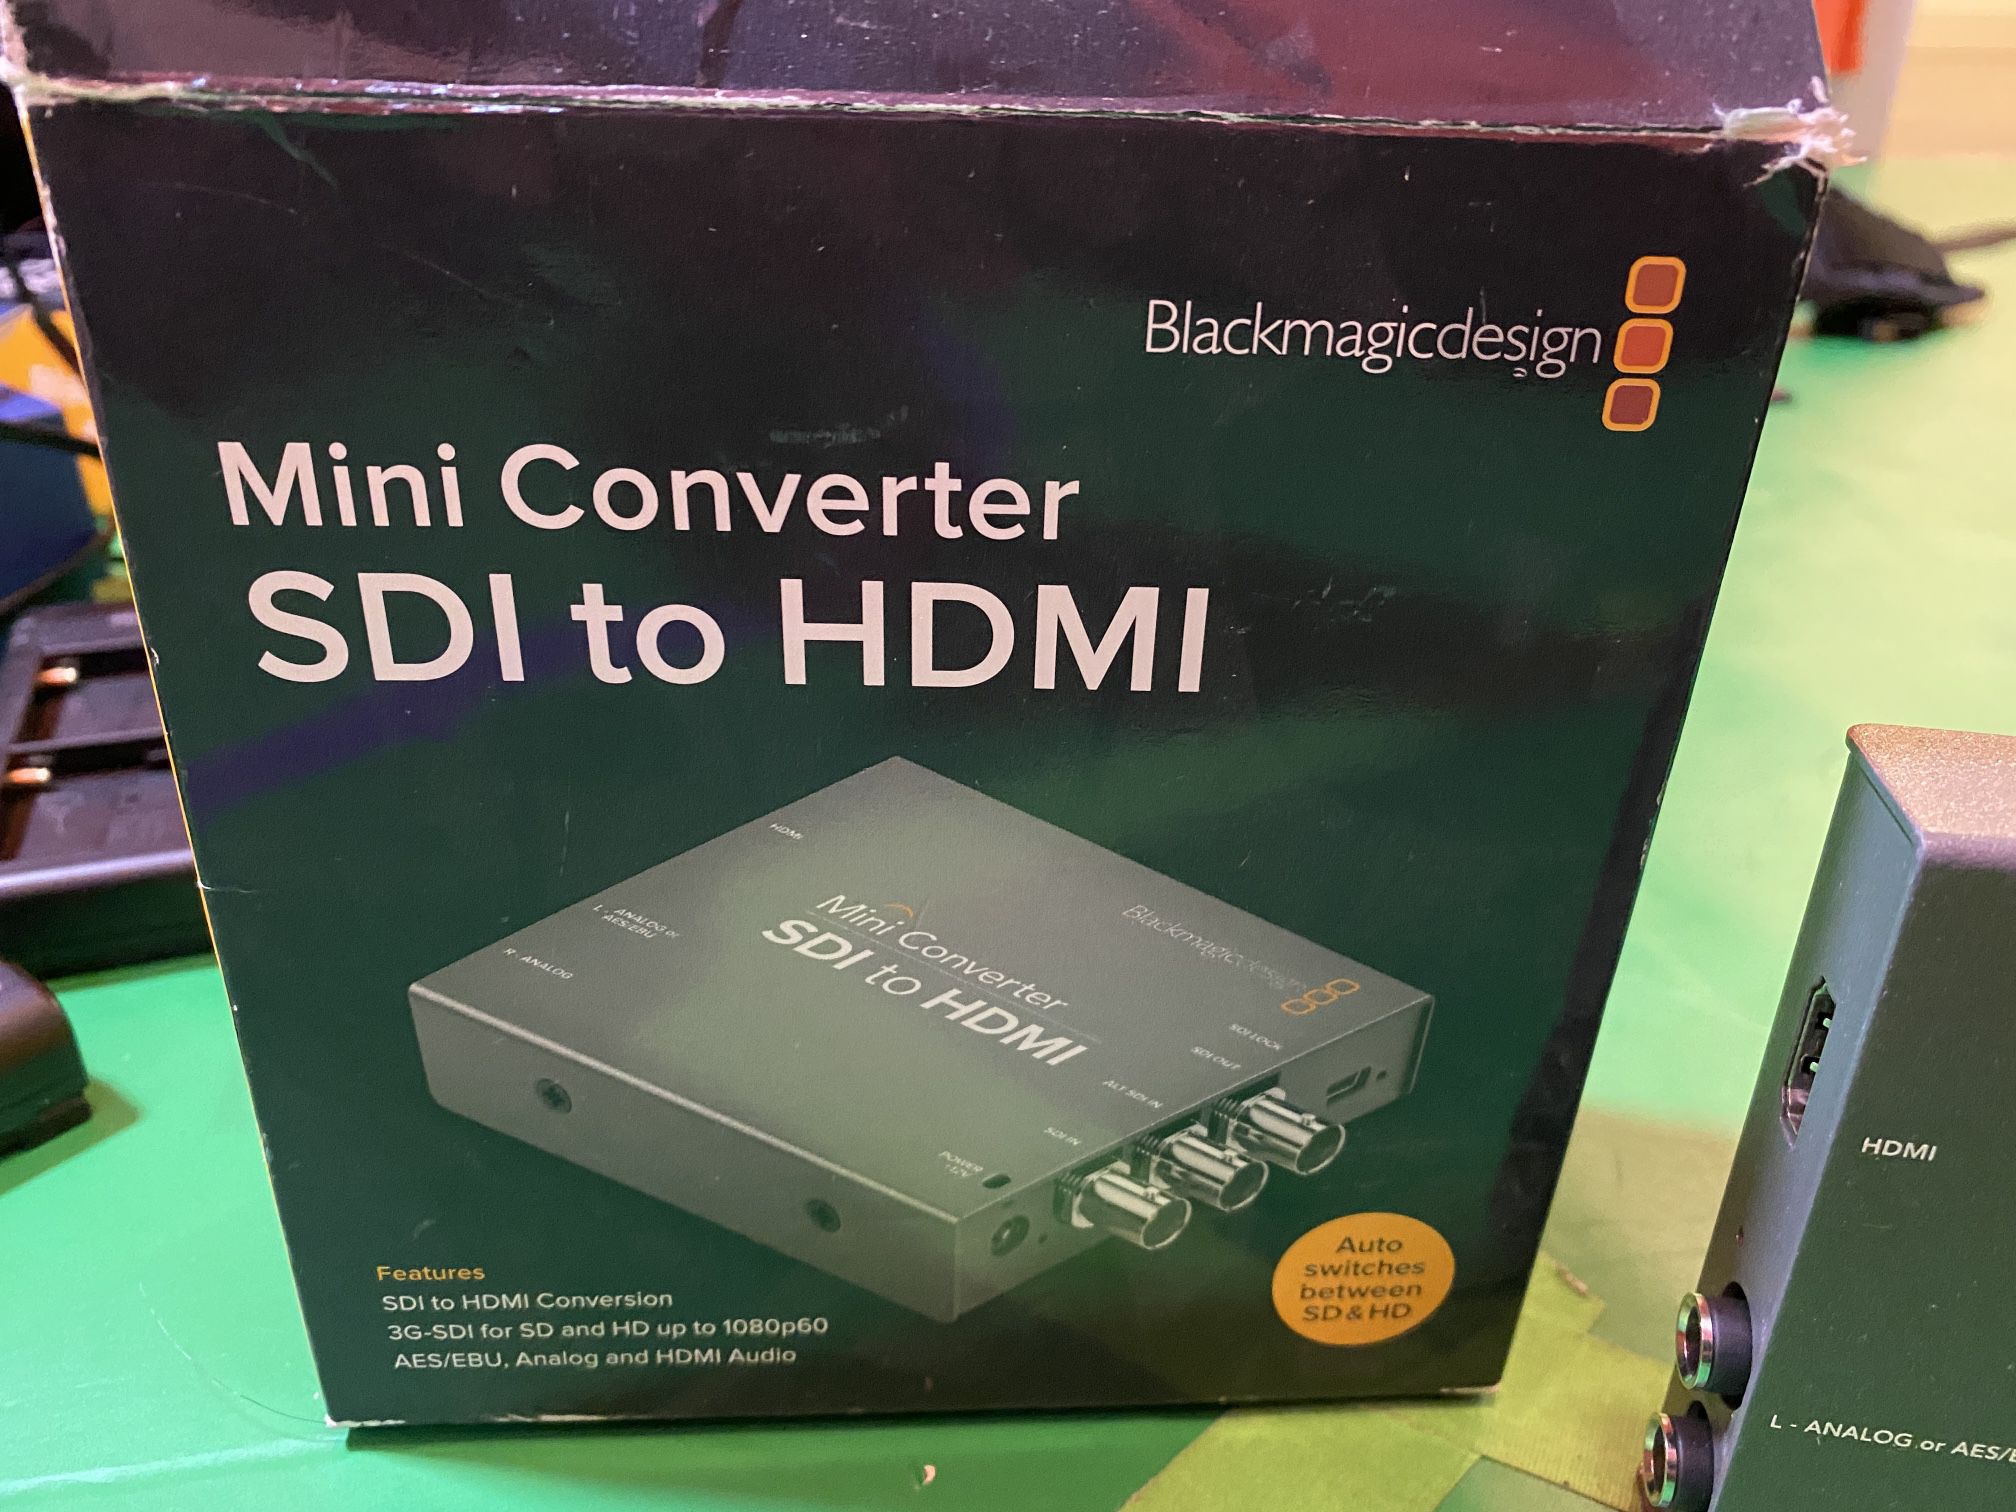 Blackmagic Design Mini Converter SDI to Hdmi